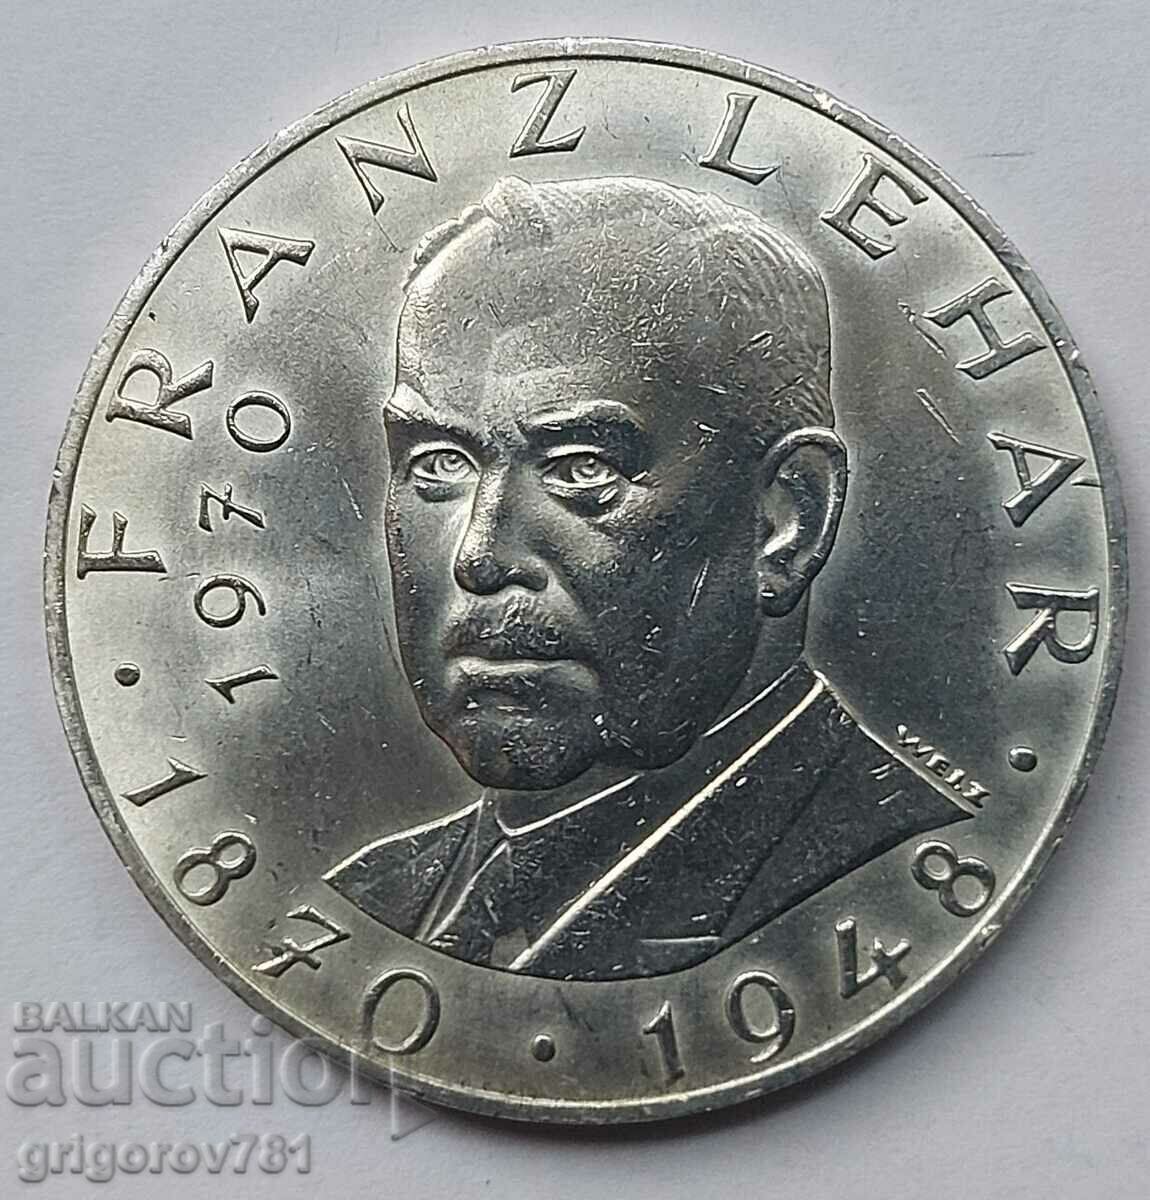 Ασημένιο 25 σελίνια Αυστρία 1970 - Ασημένιο νόμισμα #33